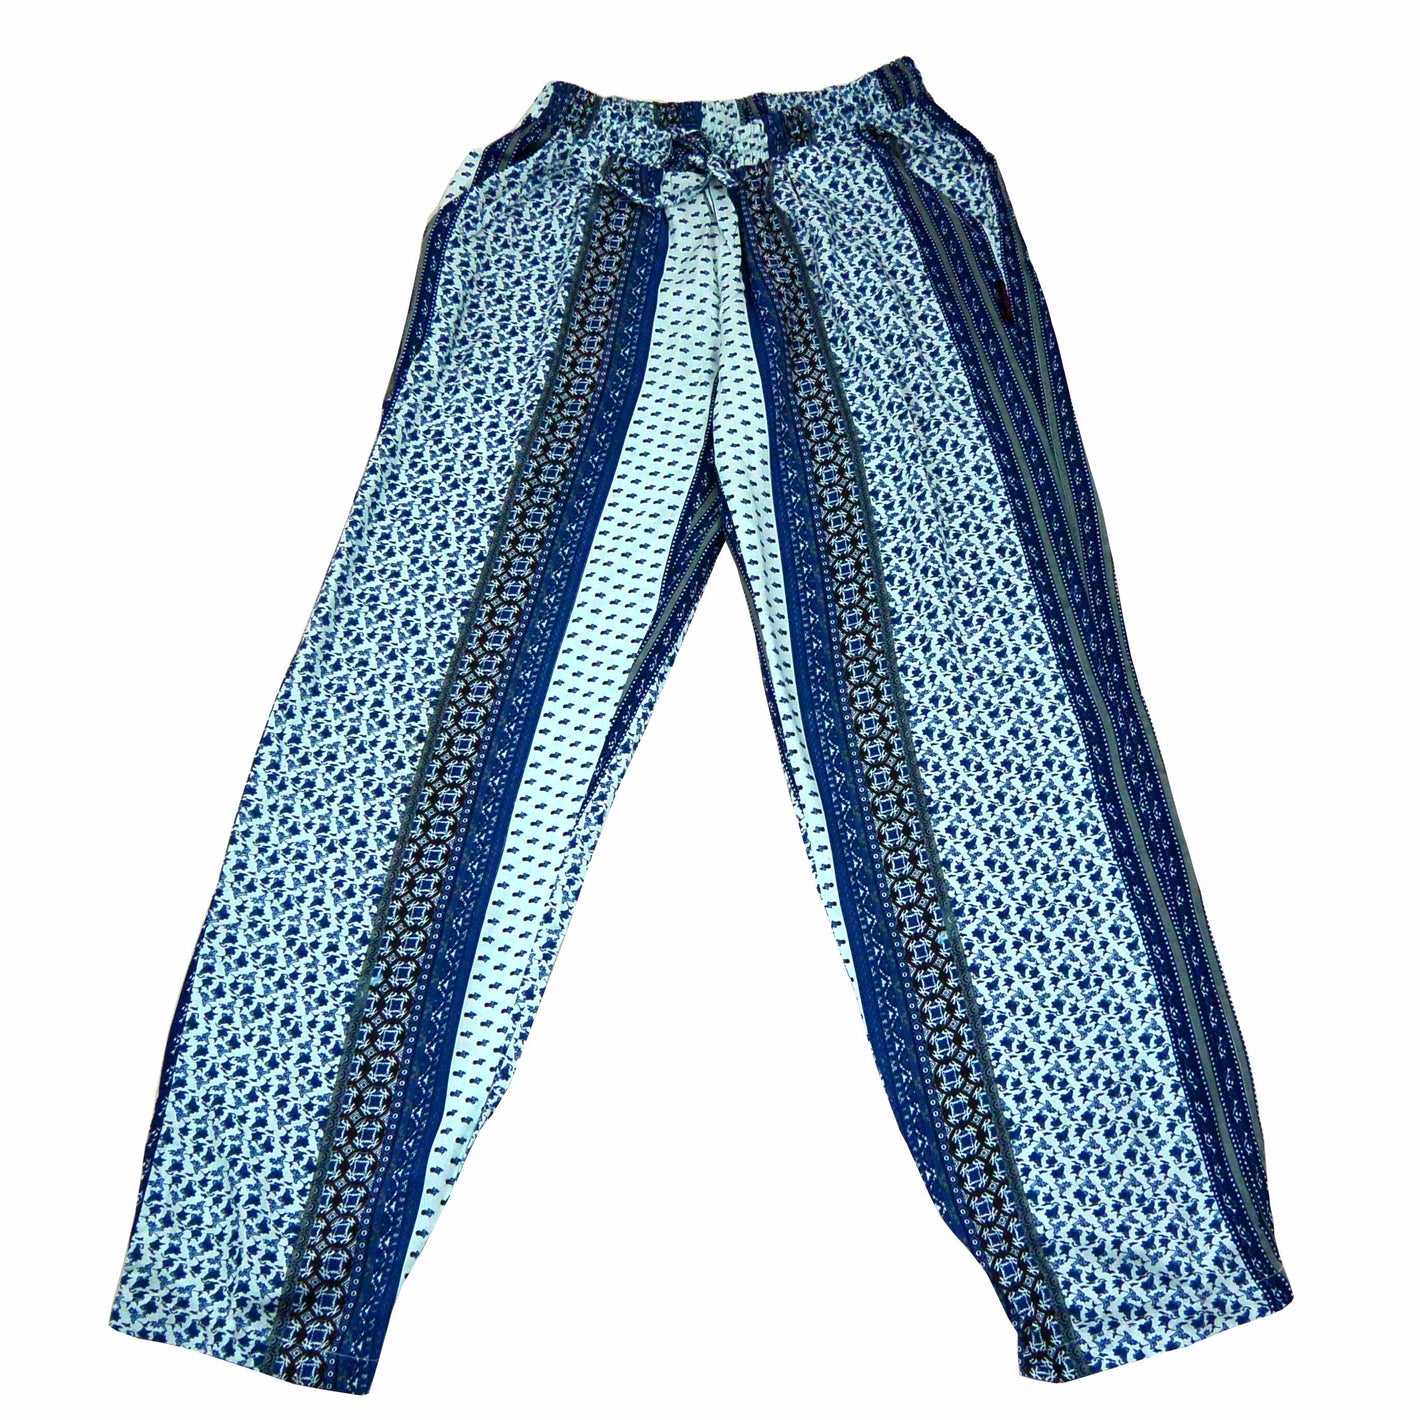 Frauen Hose aus Viskose in Blau, mit normaler Bundhöhe